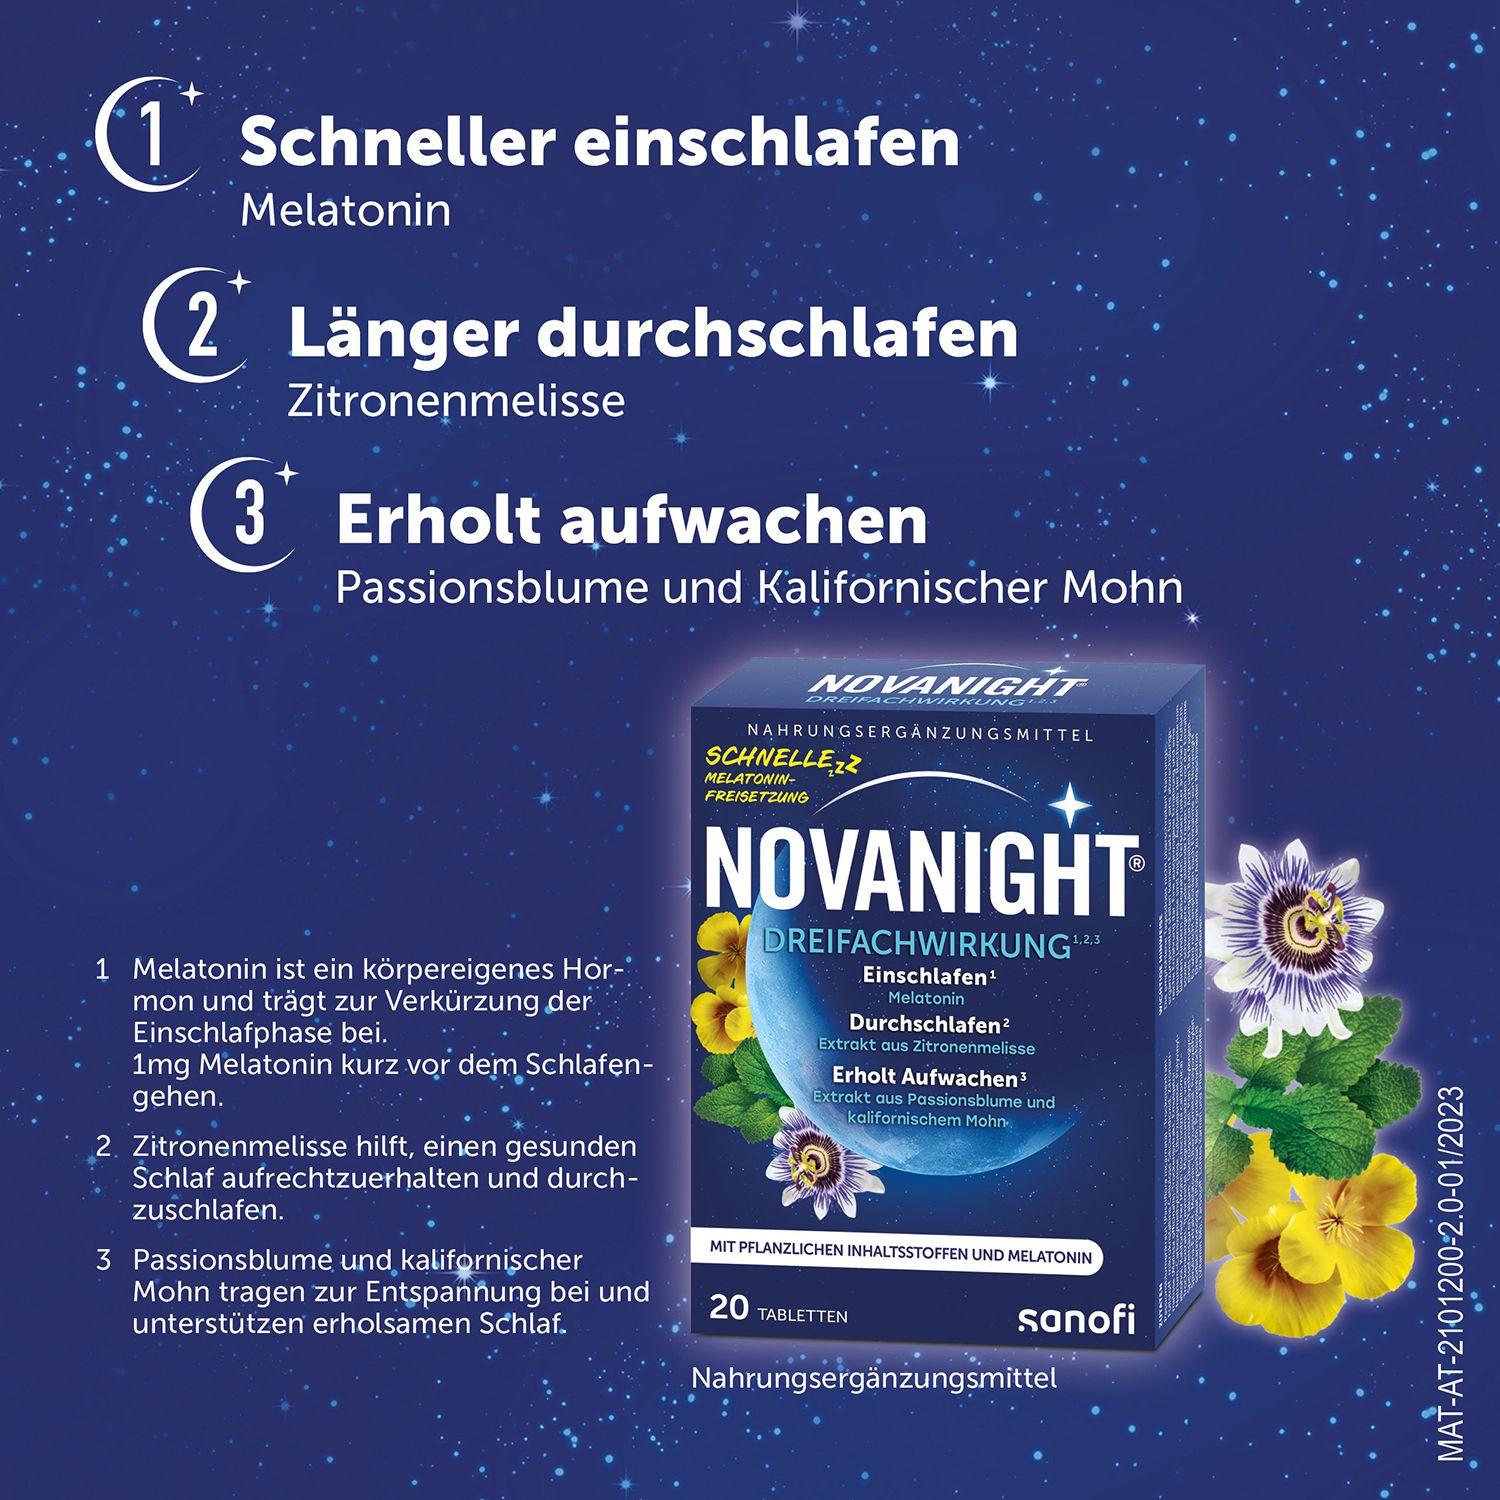 Novanight® Dreifachwirkung mit Melatonin